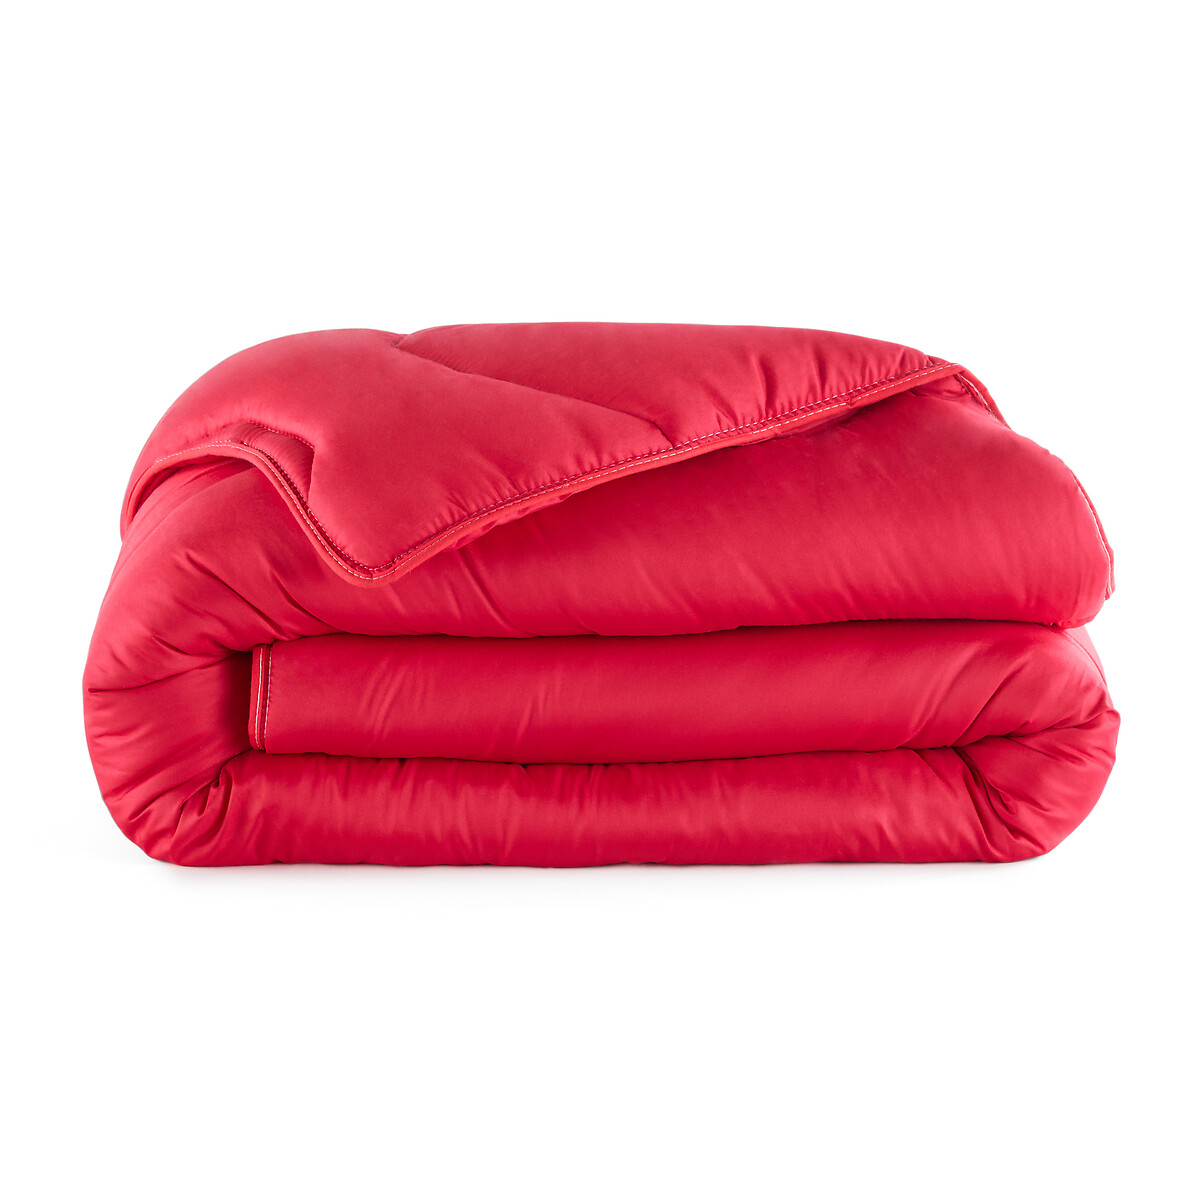 Одеяло La Redoute COLOR  полиэстера  гм 260 x 240 см красный, размер 260 x 240 см - фото 2